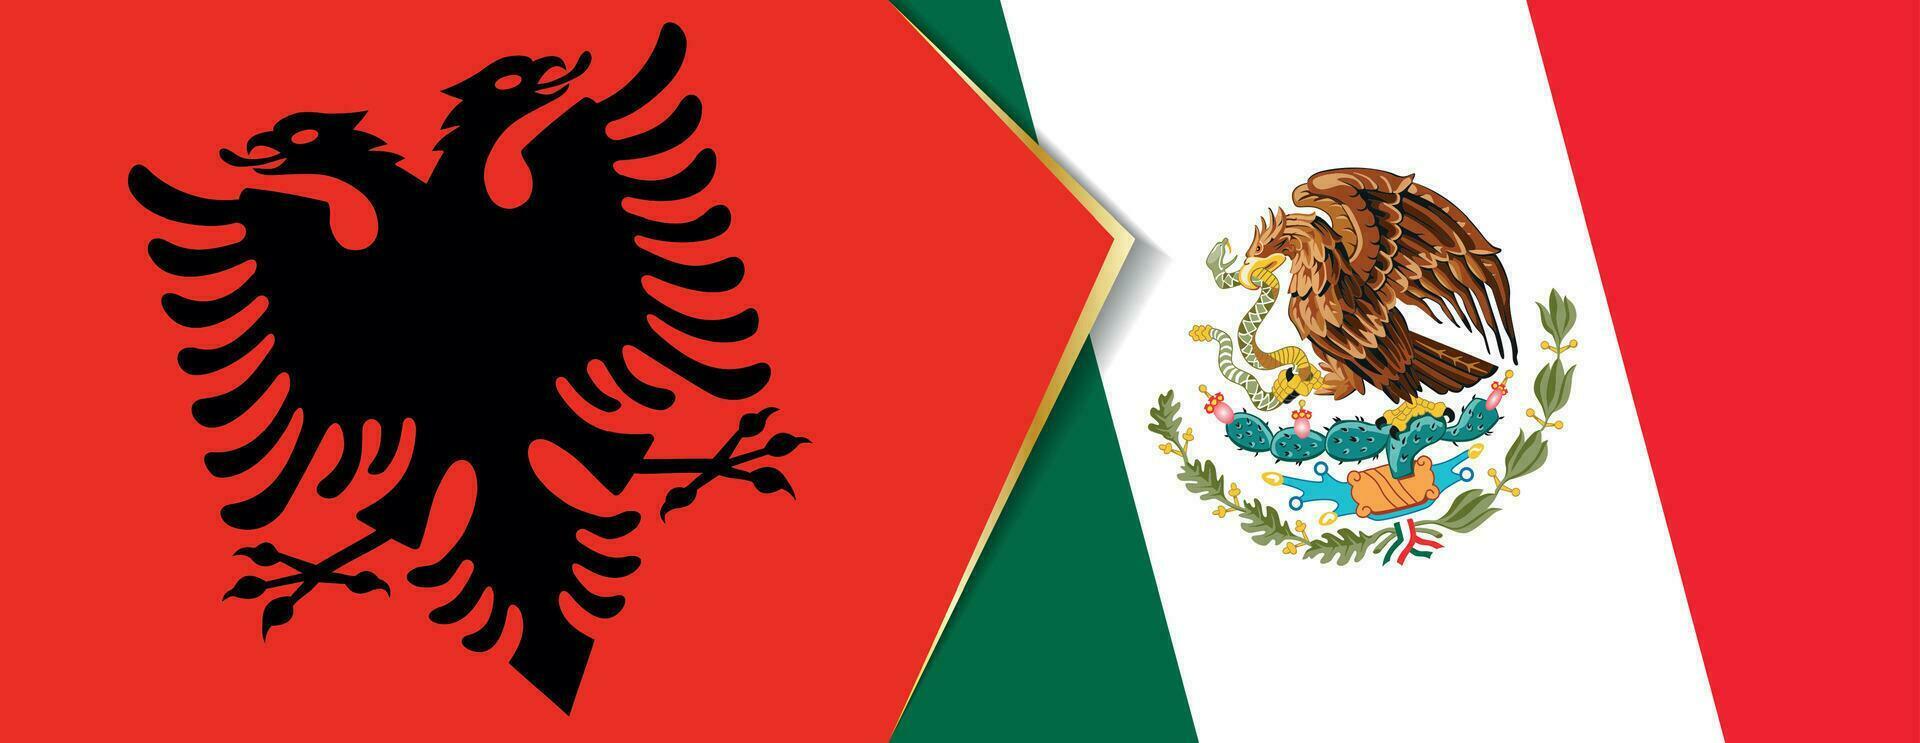 Albania y mexico banderas, dos vector banderas